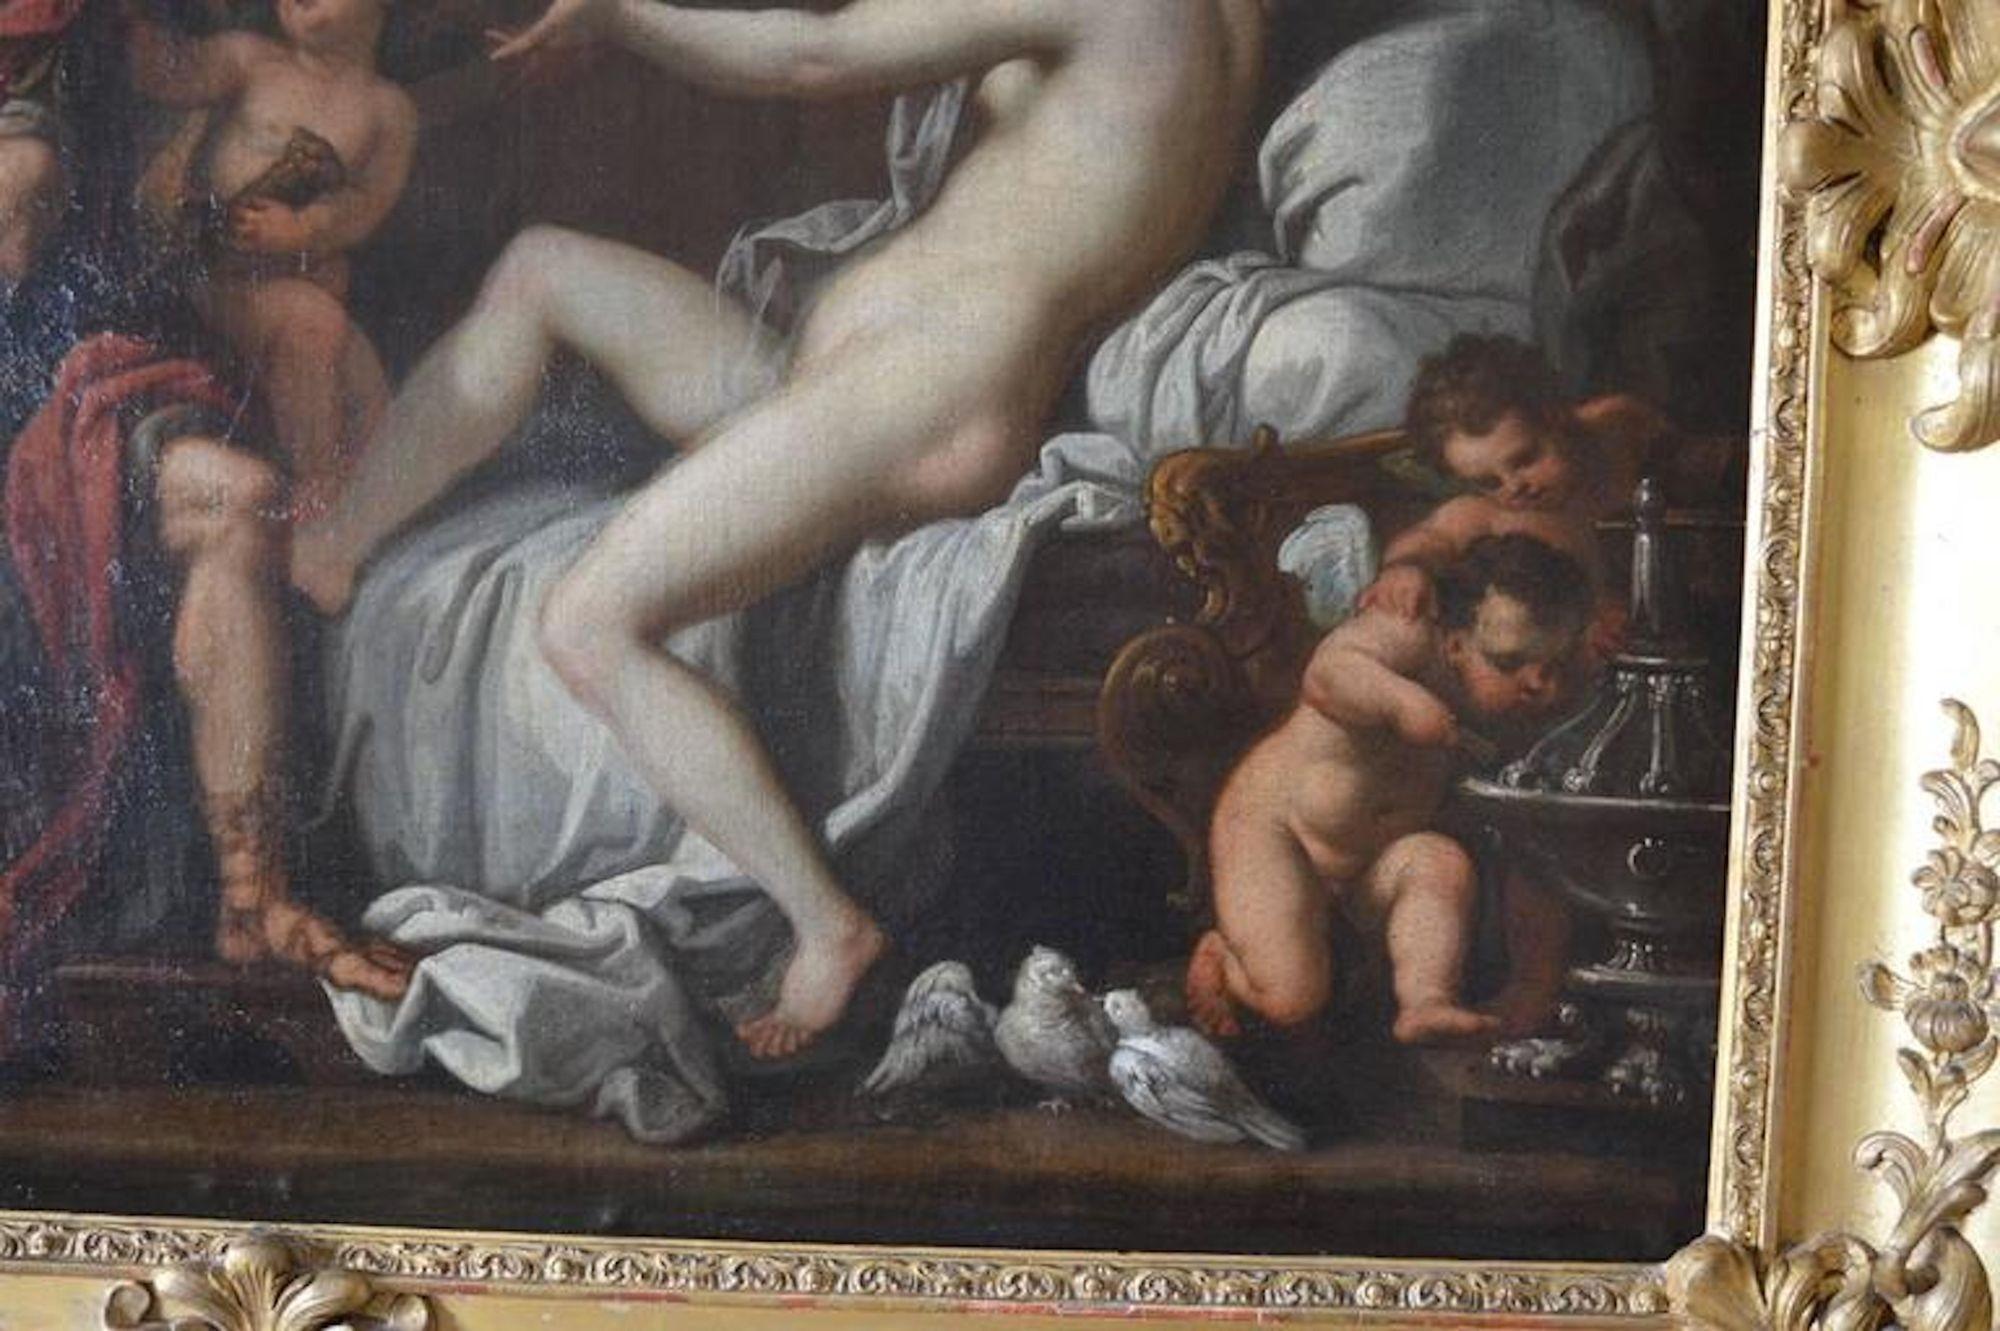 Peinture italienne sur toile du 18e siècle.
 
Dimensions :
 
27,75